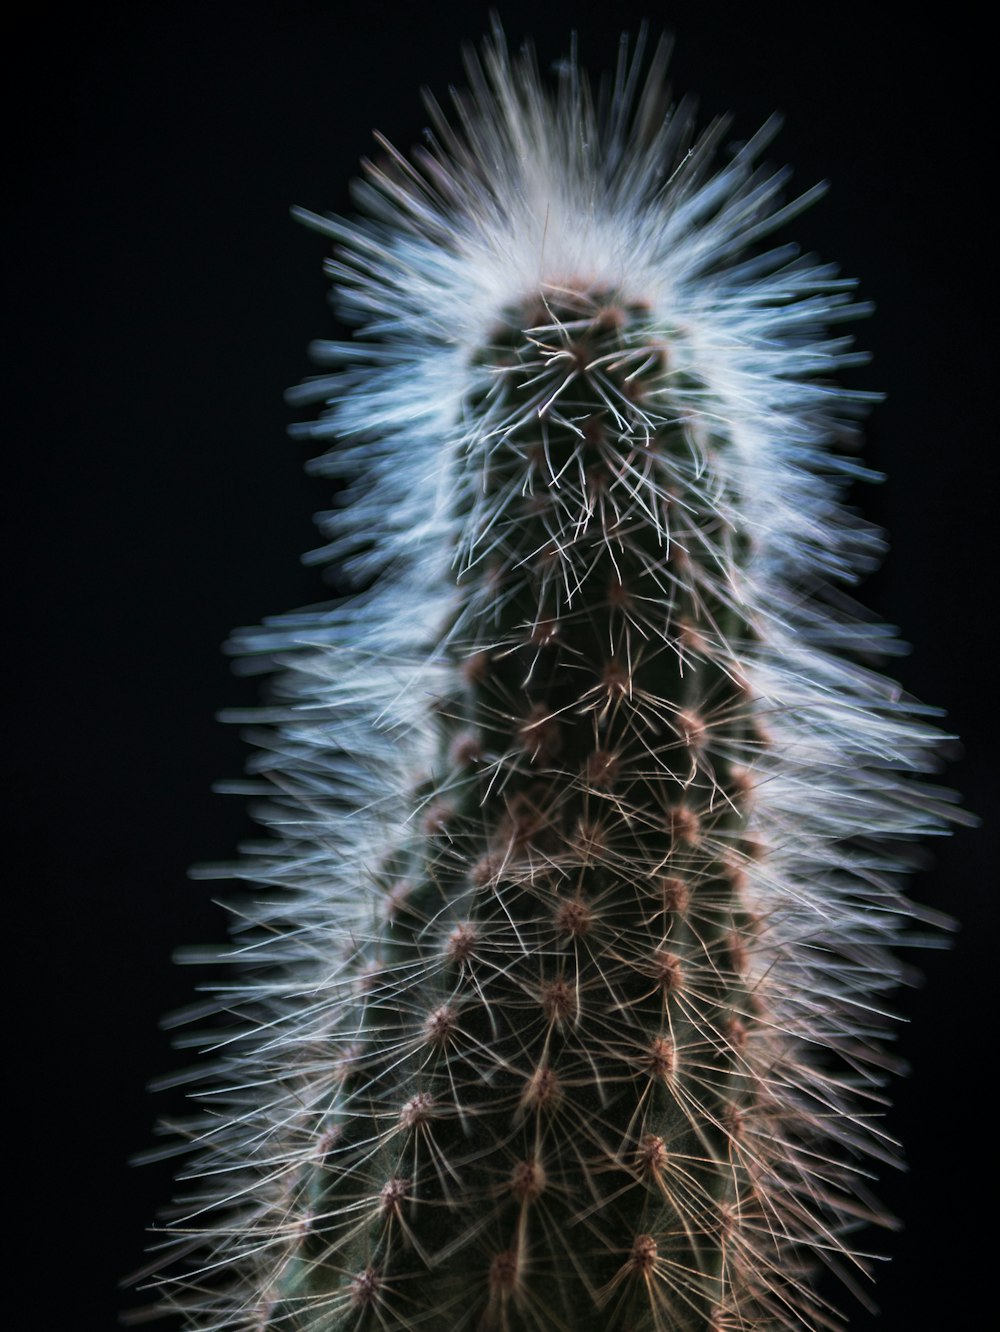 closeup photo of green cactus